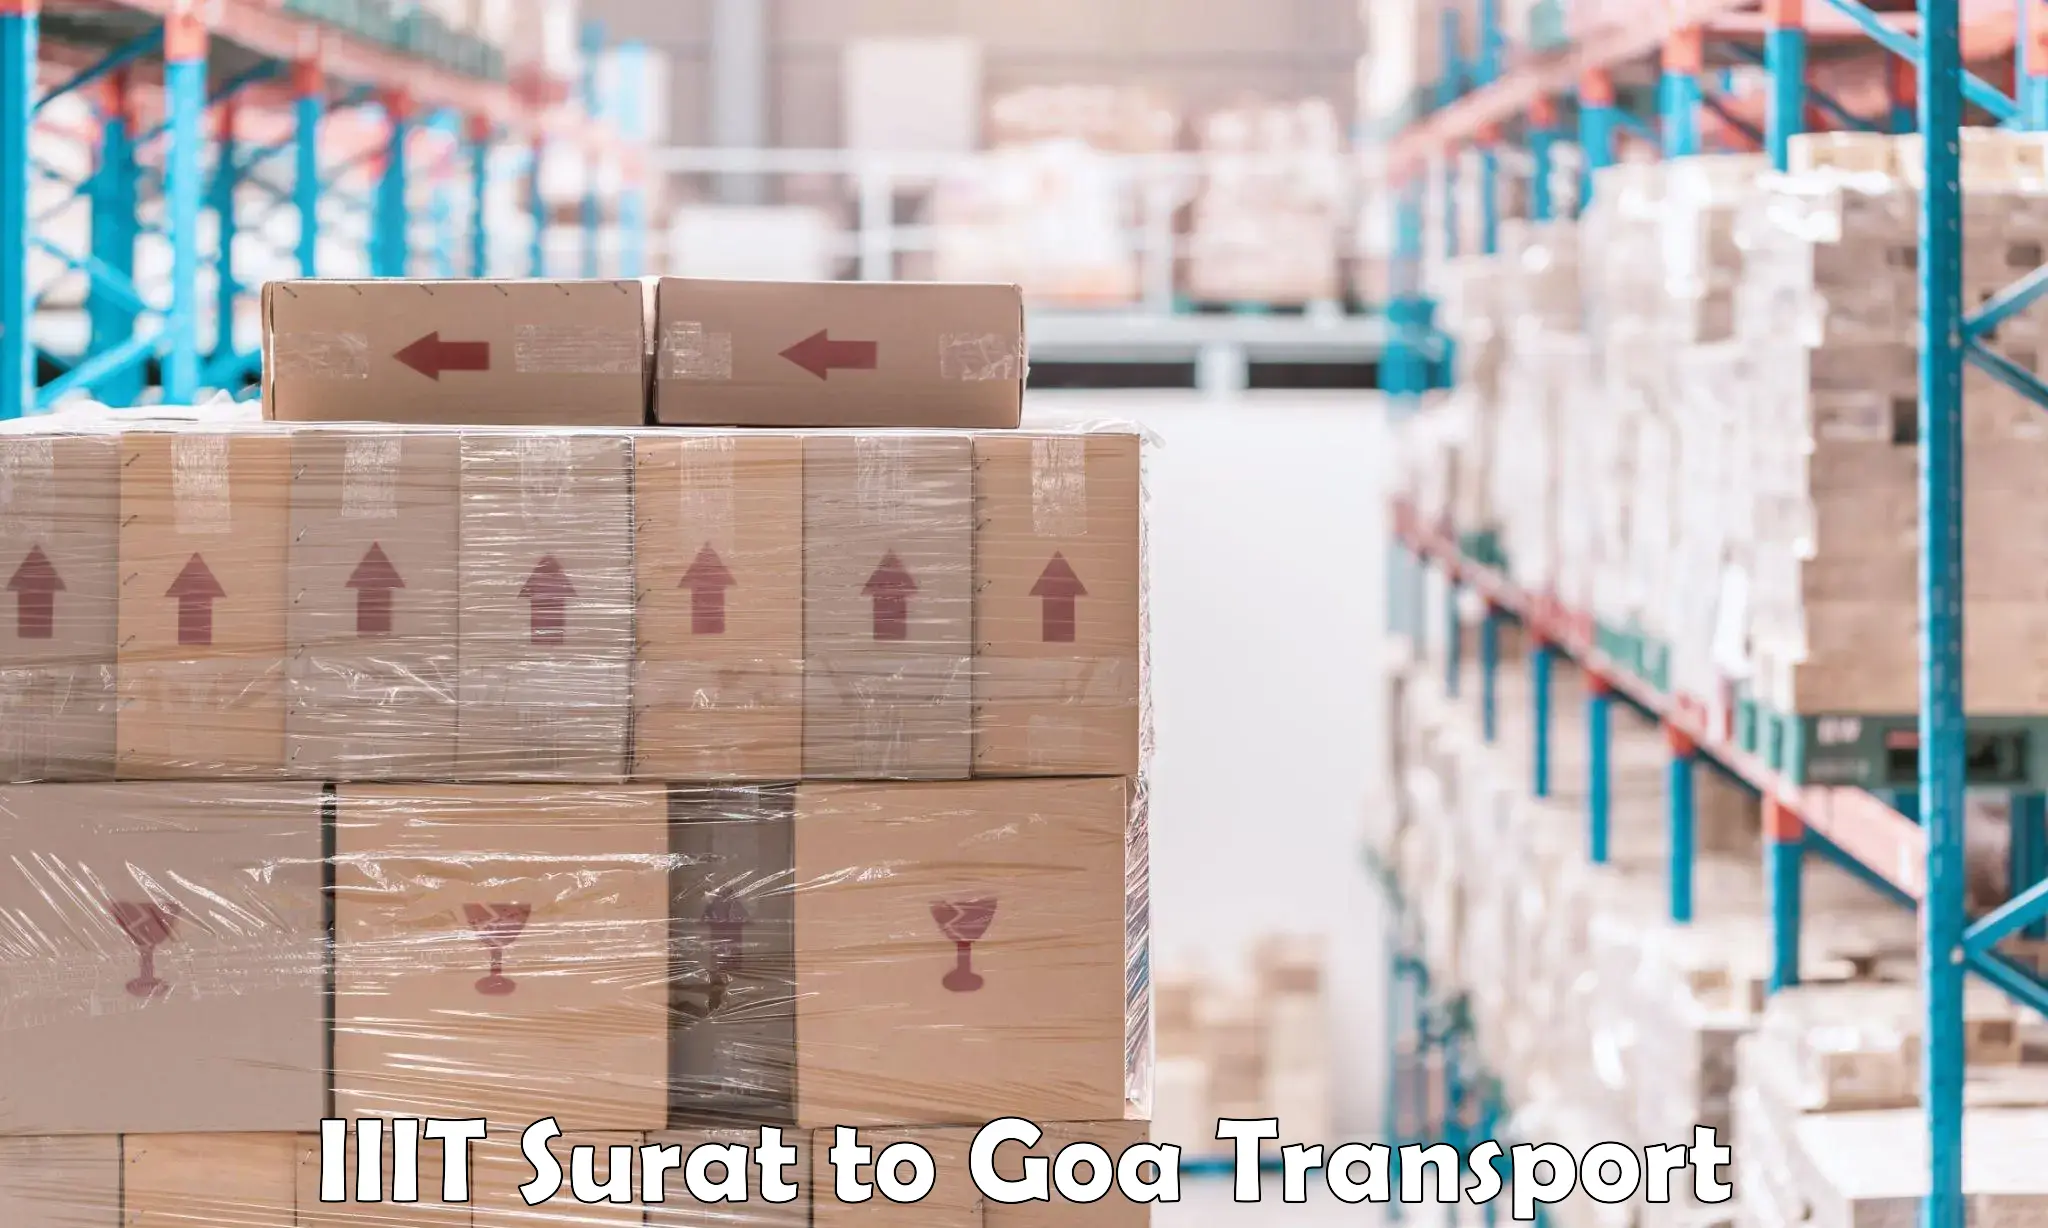 All India transport service IIIT Surat to IIT Goa